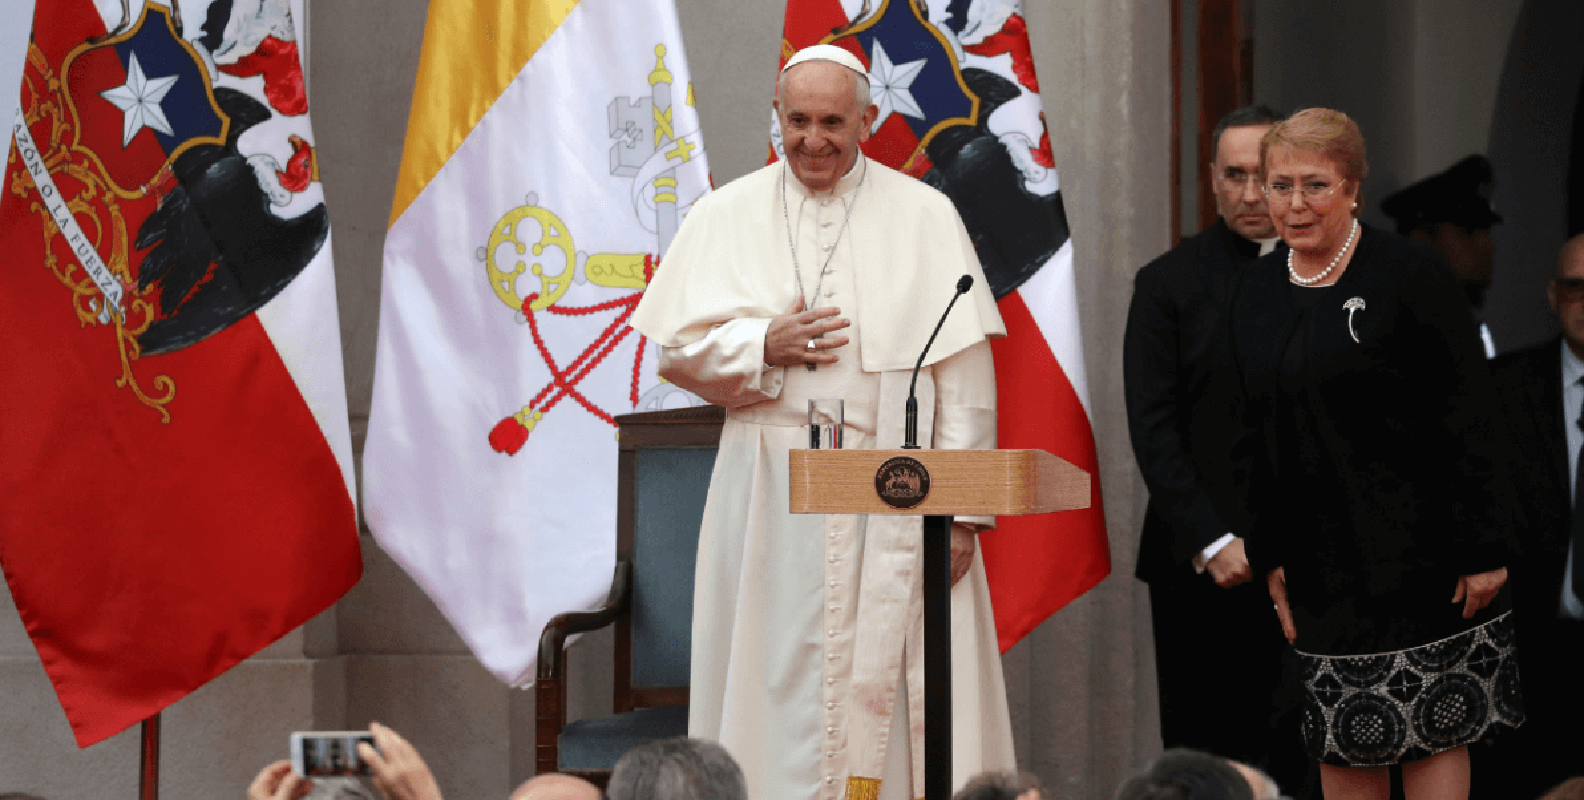 Víctima de abusos sexuales rechaza pedido perdón del papa y pide "acciones"